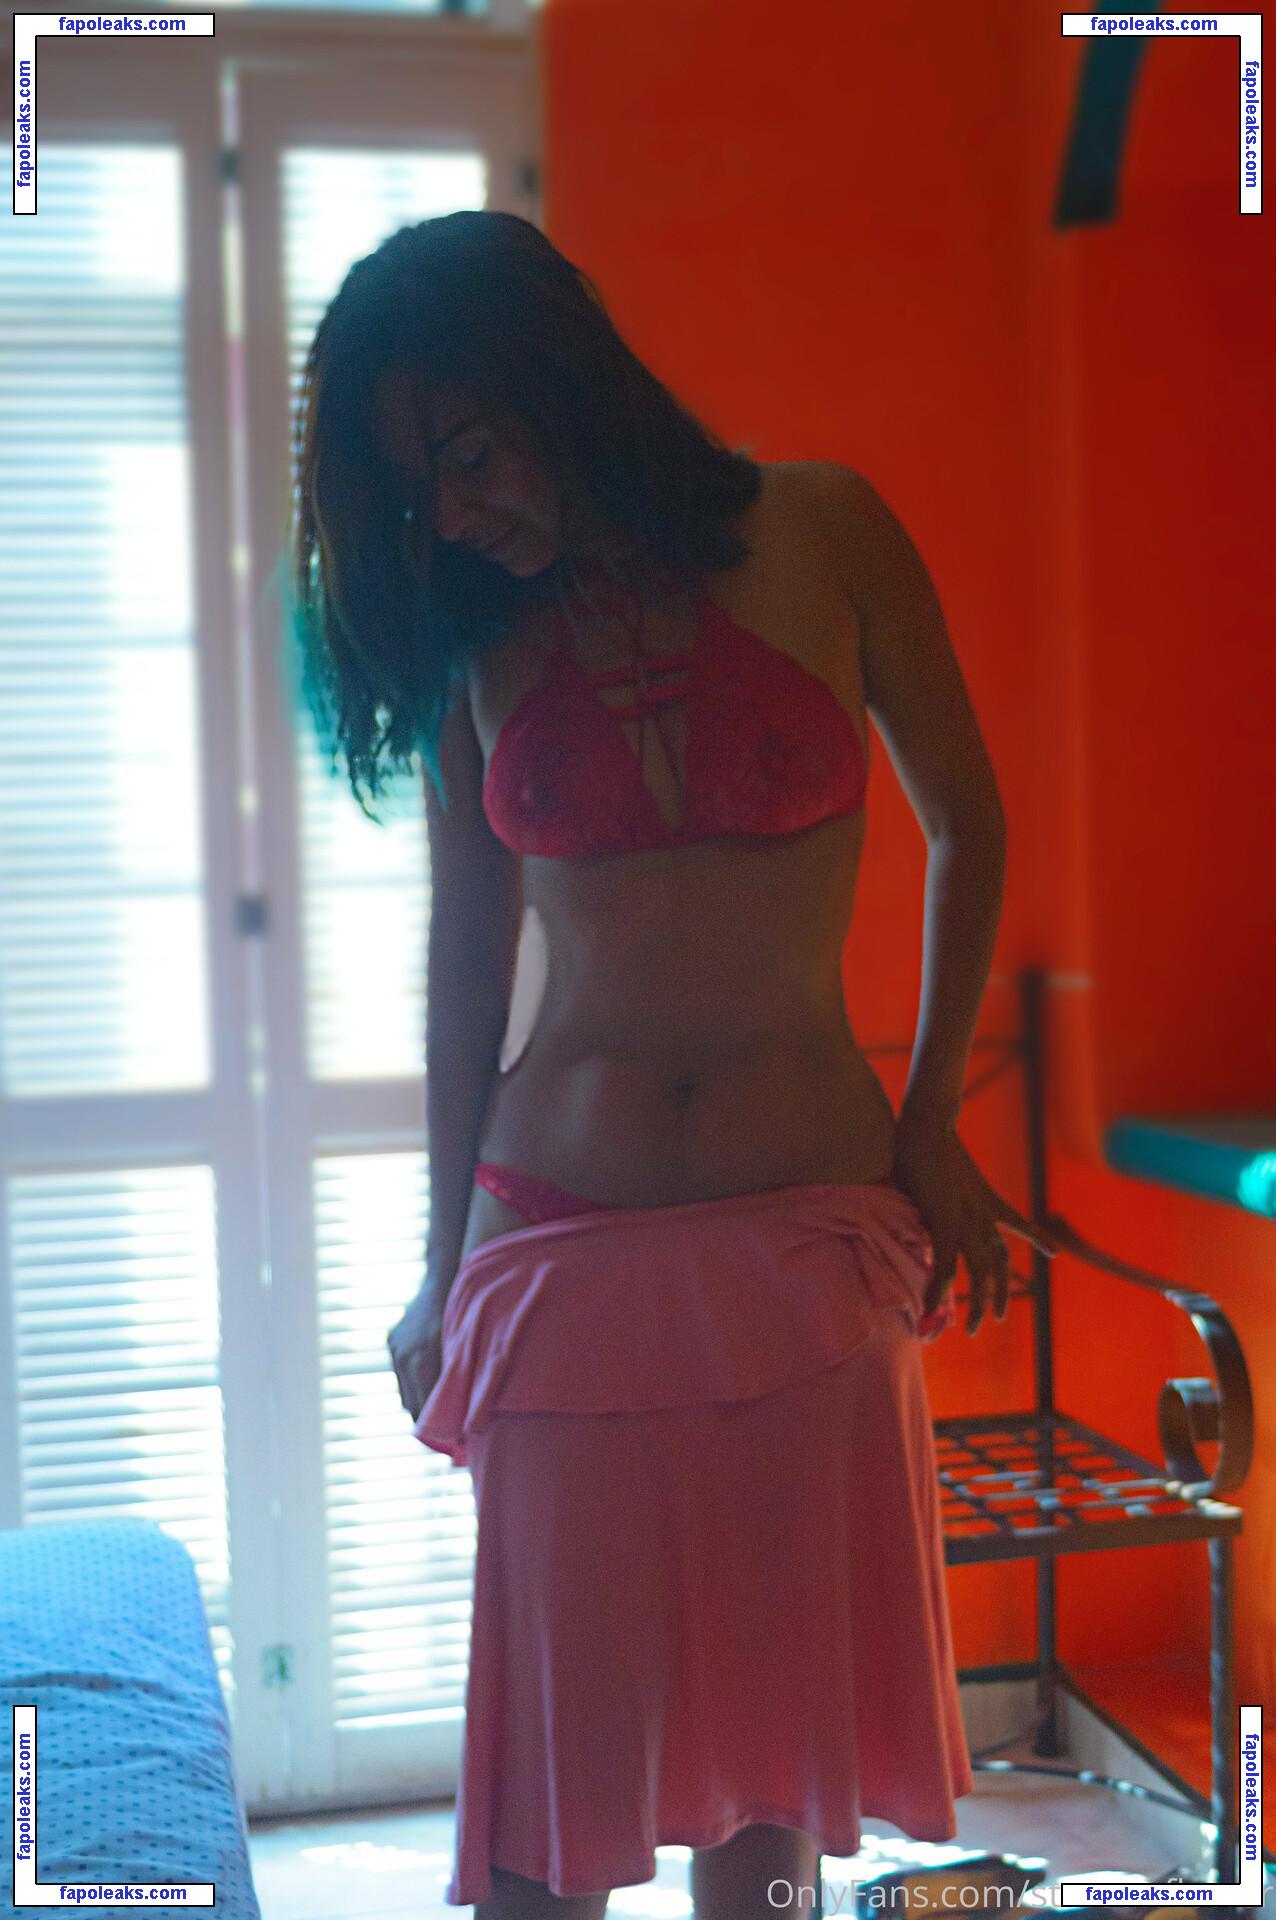 Lizbeth Martinez / Estrellita mtz / starsunflower nude photo #0060 from OnlyFans